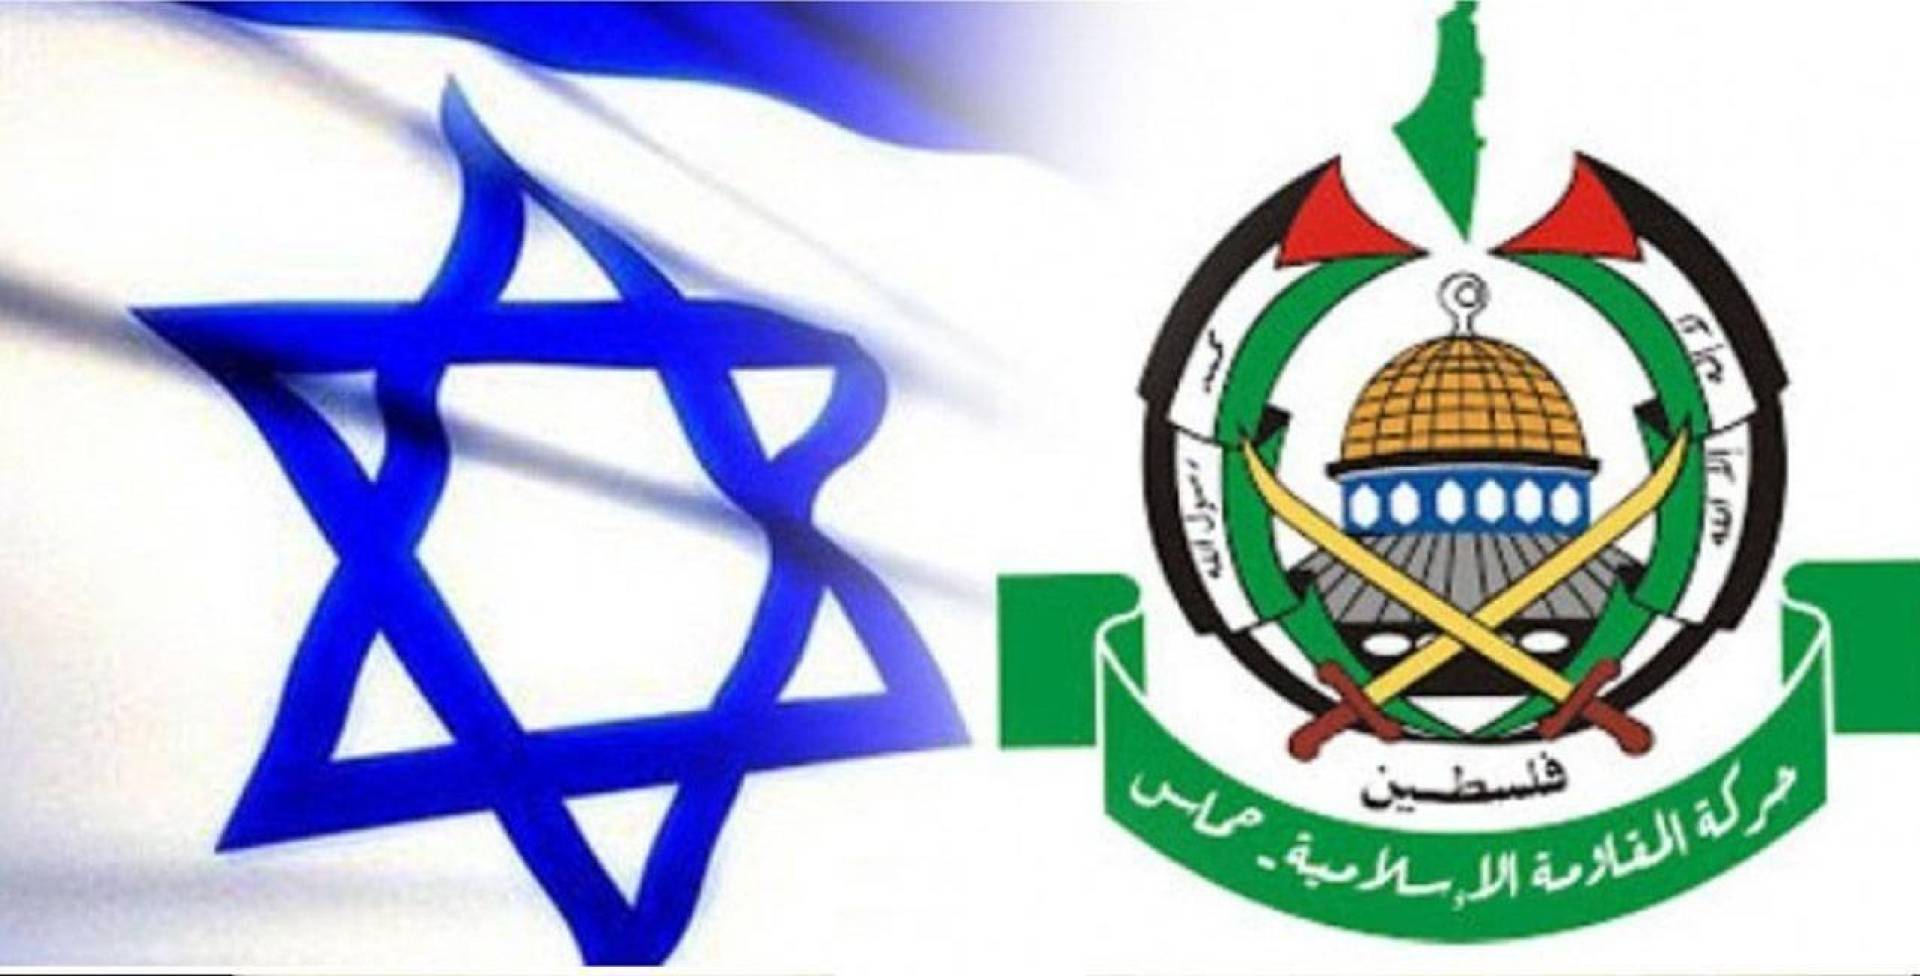 حماس تعلن تمديد الهدنة الانسانية في غزة يومين